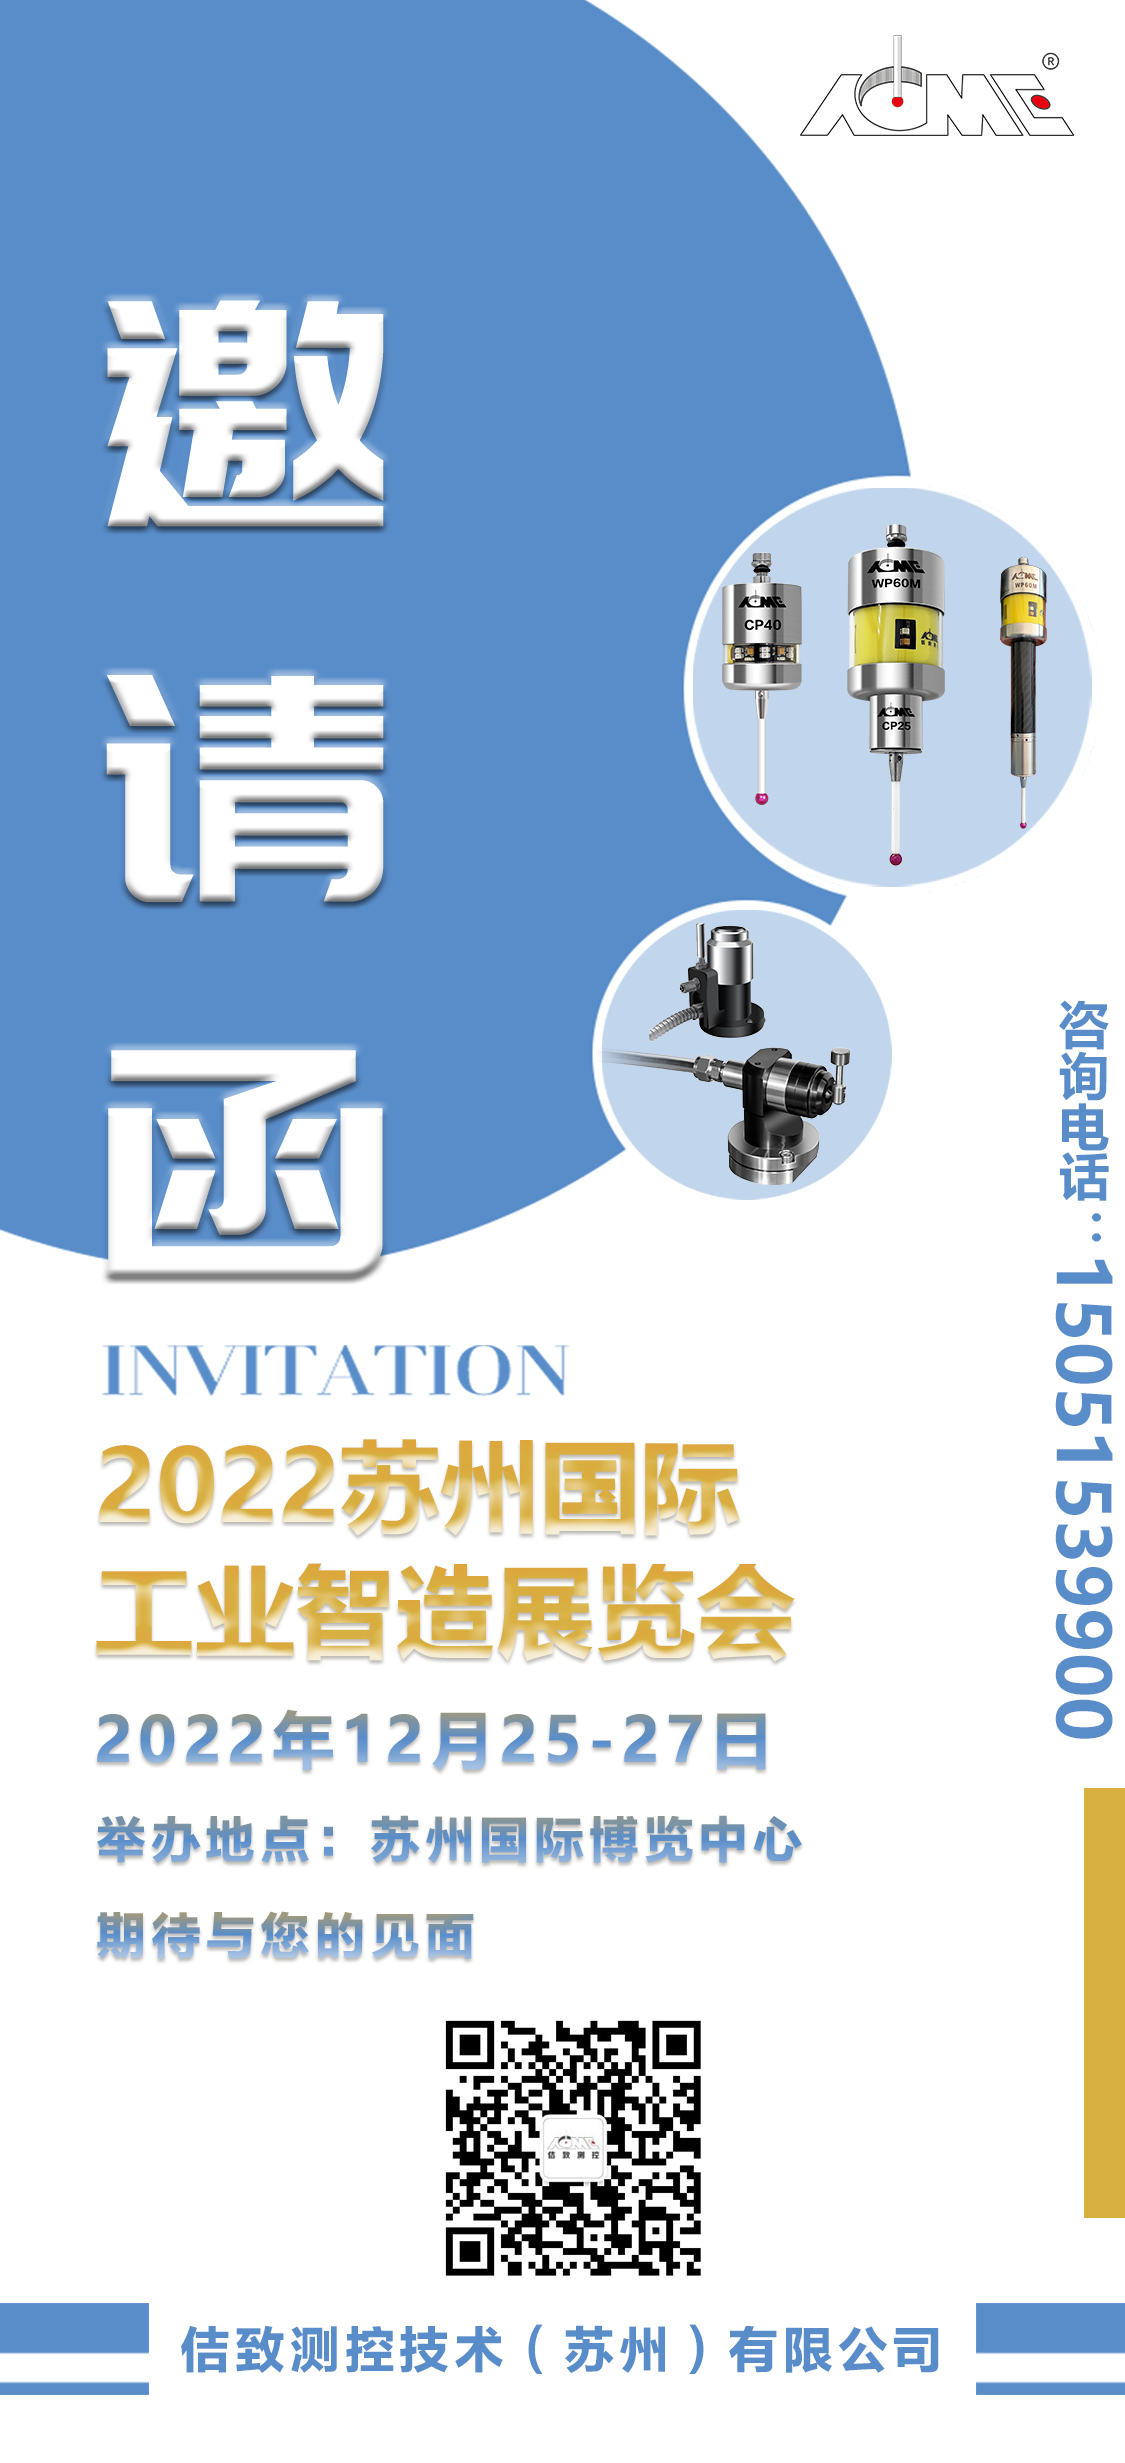 Inbjudningsbrev till Suzhou International Industrial Intelligent Manufacturing Exhibition 2022 (6)